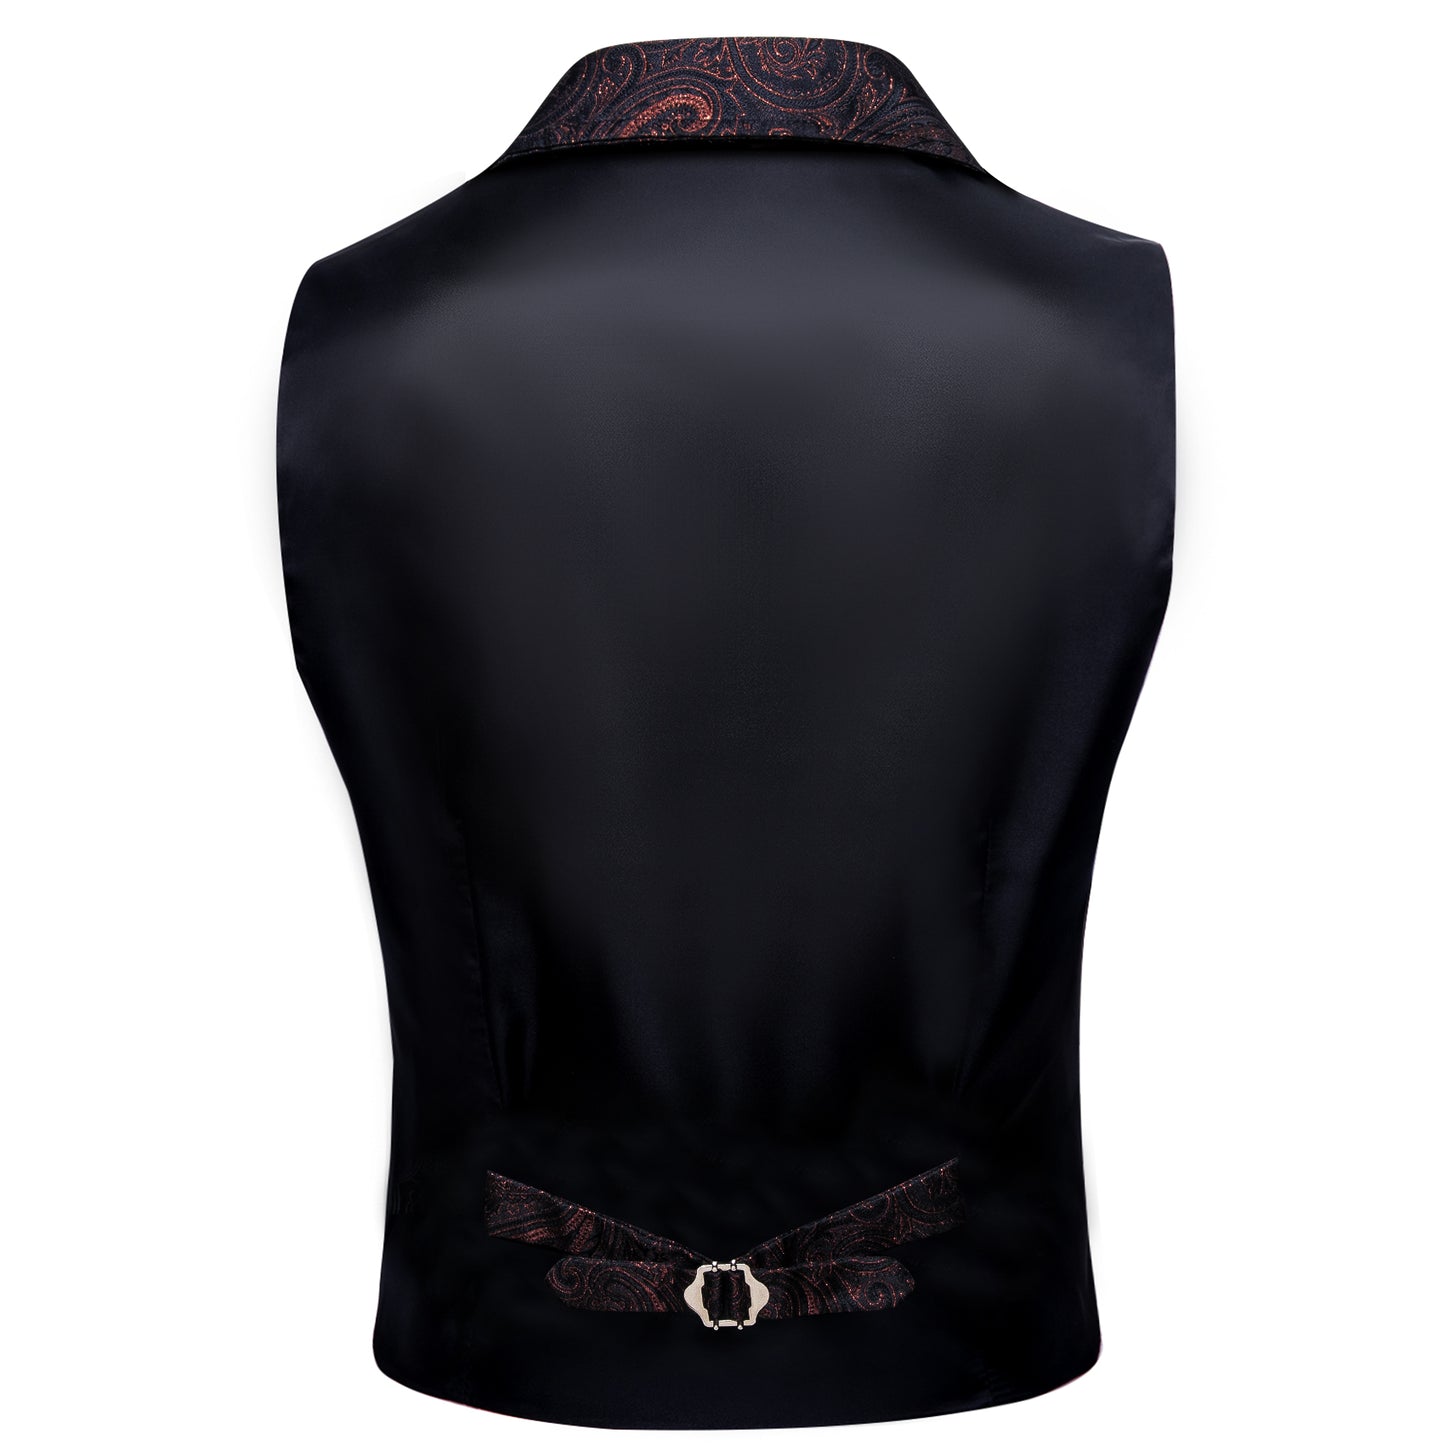 Victorian Waistcoat Steampunk Vintage Vest Silky Retro Swirl Rust Dark Red